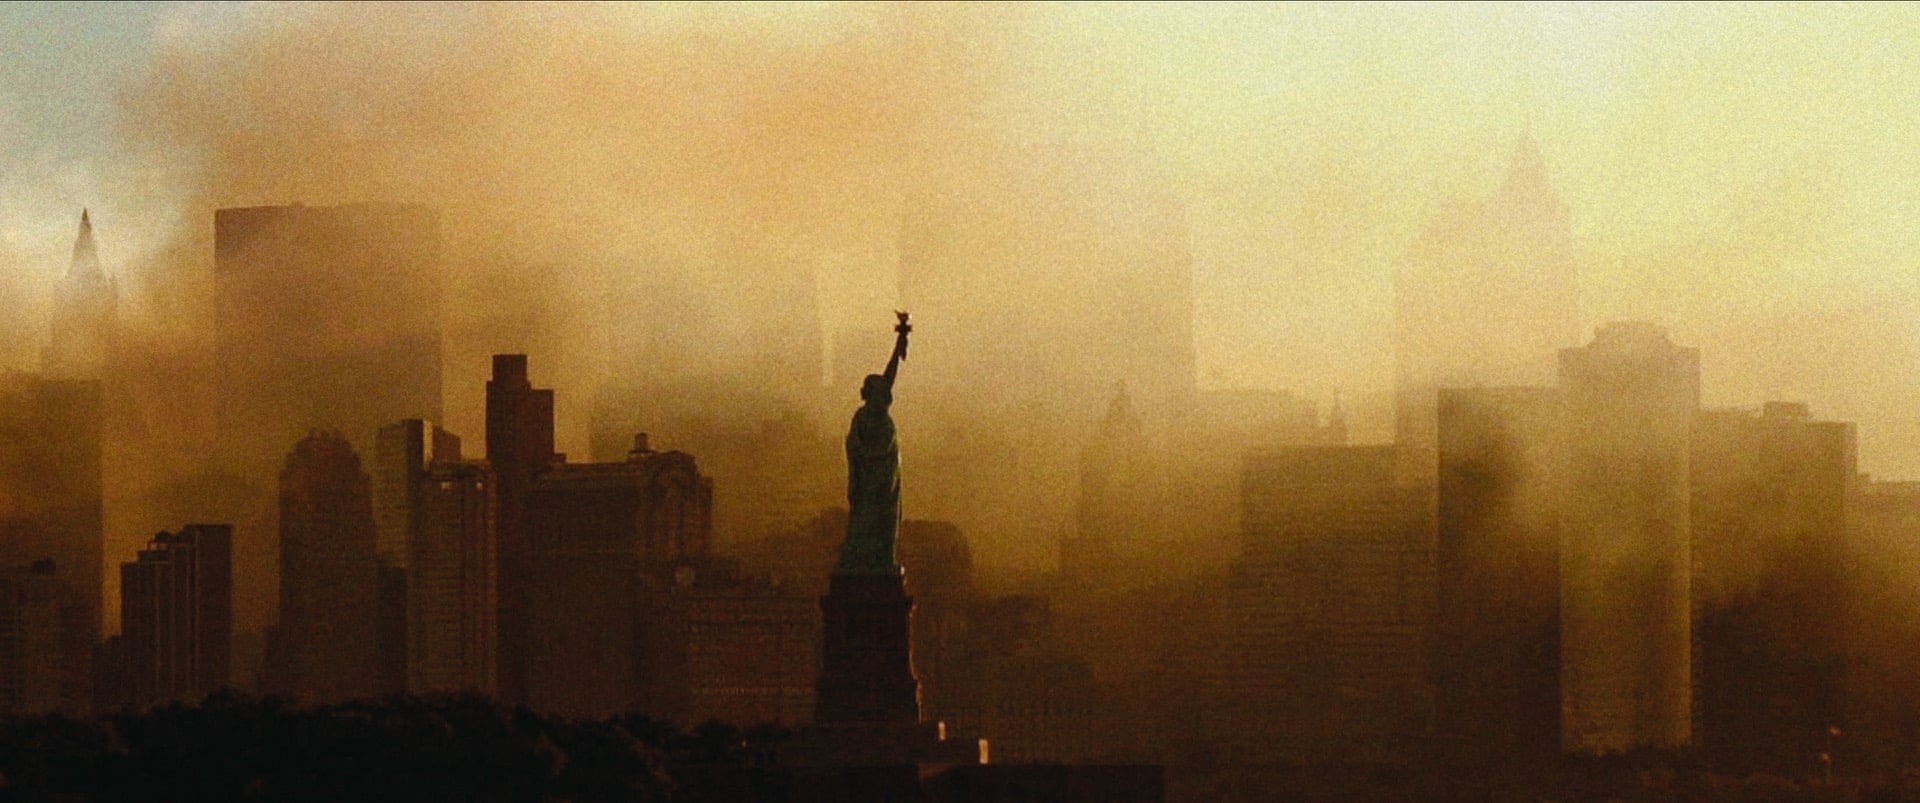 "Punkty zwrotne: 11 września i wojna z terroryzmem" – dwadzieścia lat od tragicznych wydarzeń